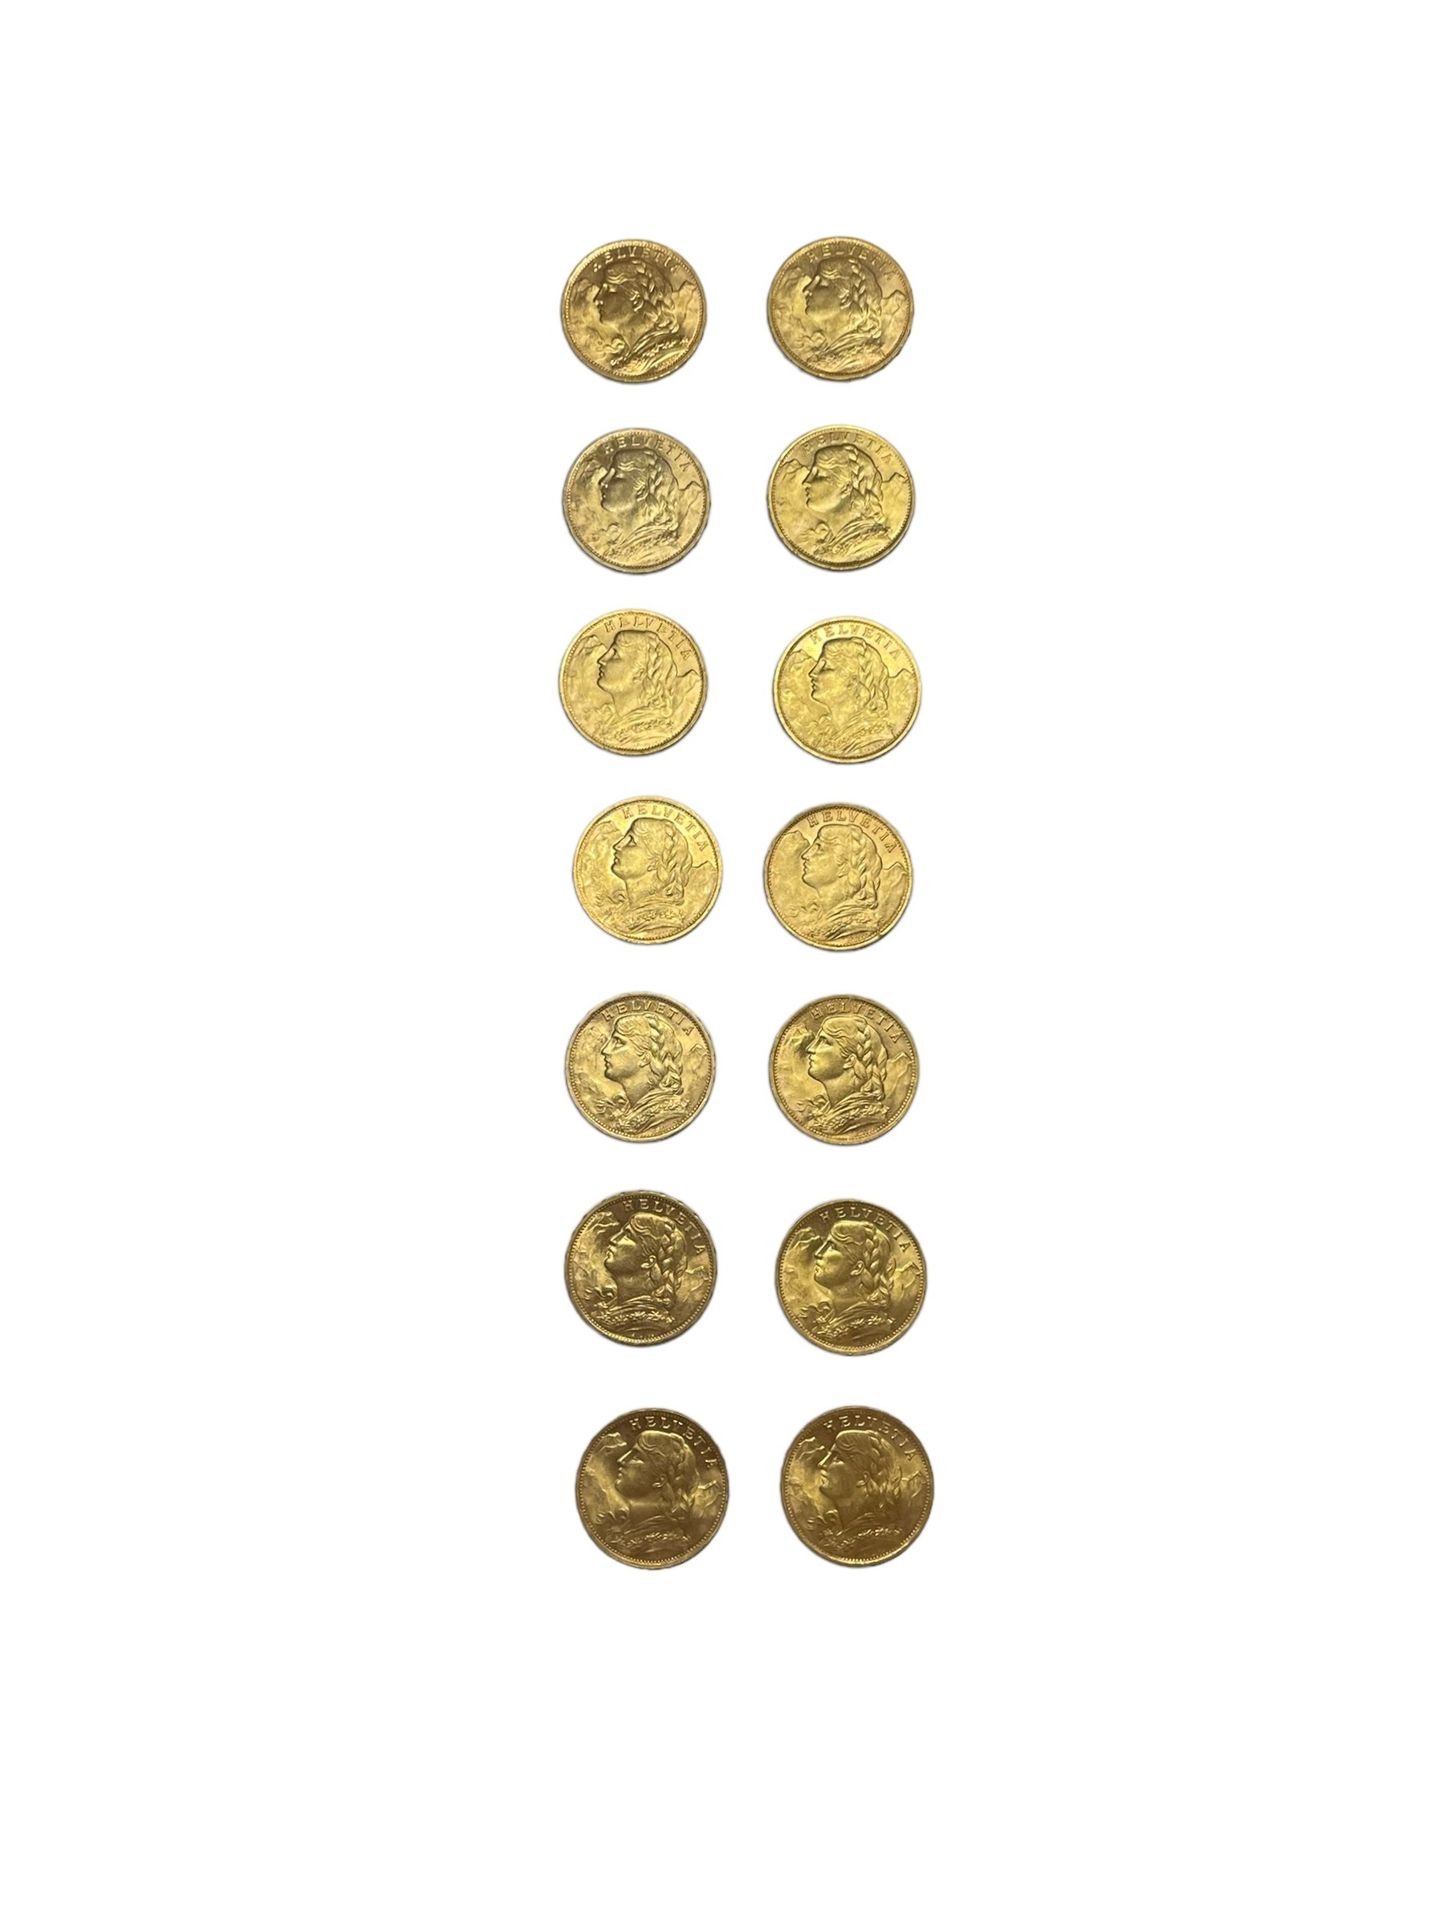 Null SCHWEIZ
14 Münzen 20 Franken Gold
Gewicht: 90.2 g